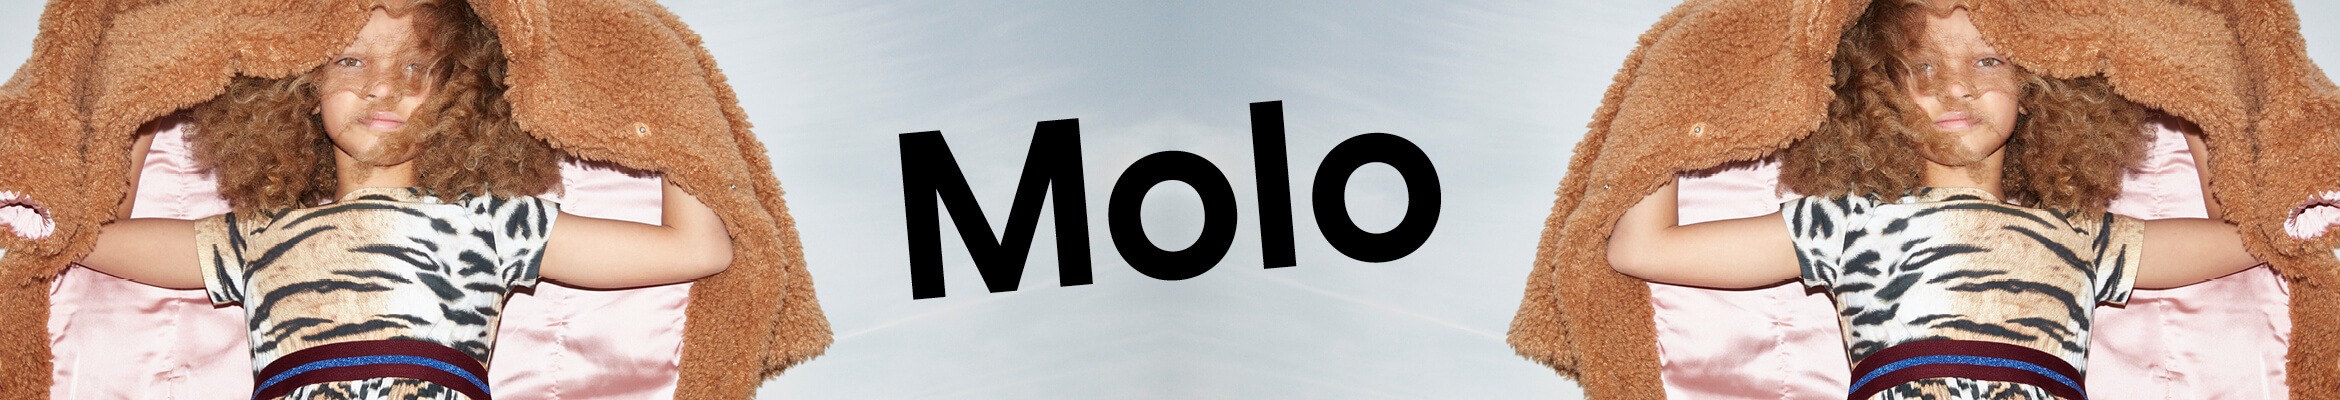 Molo_k